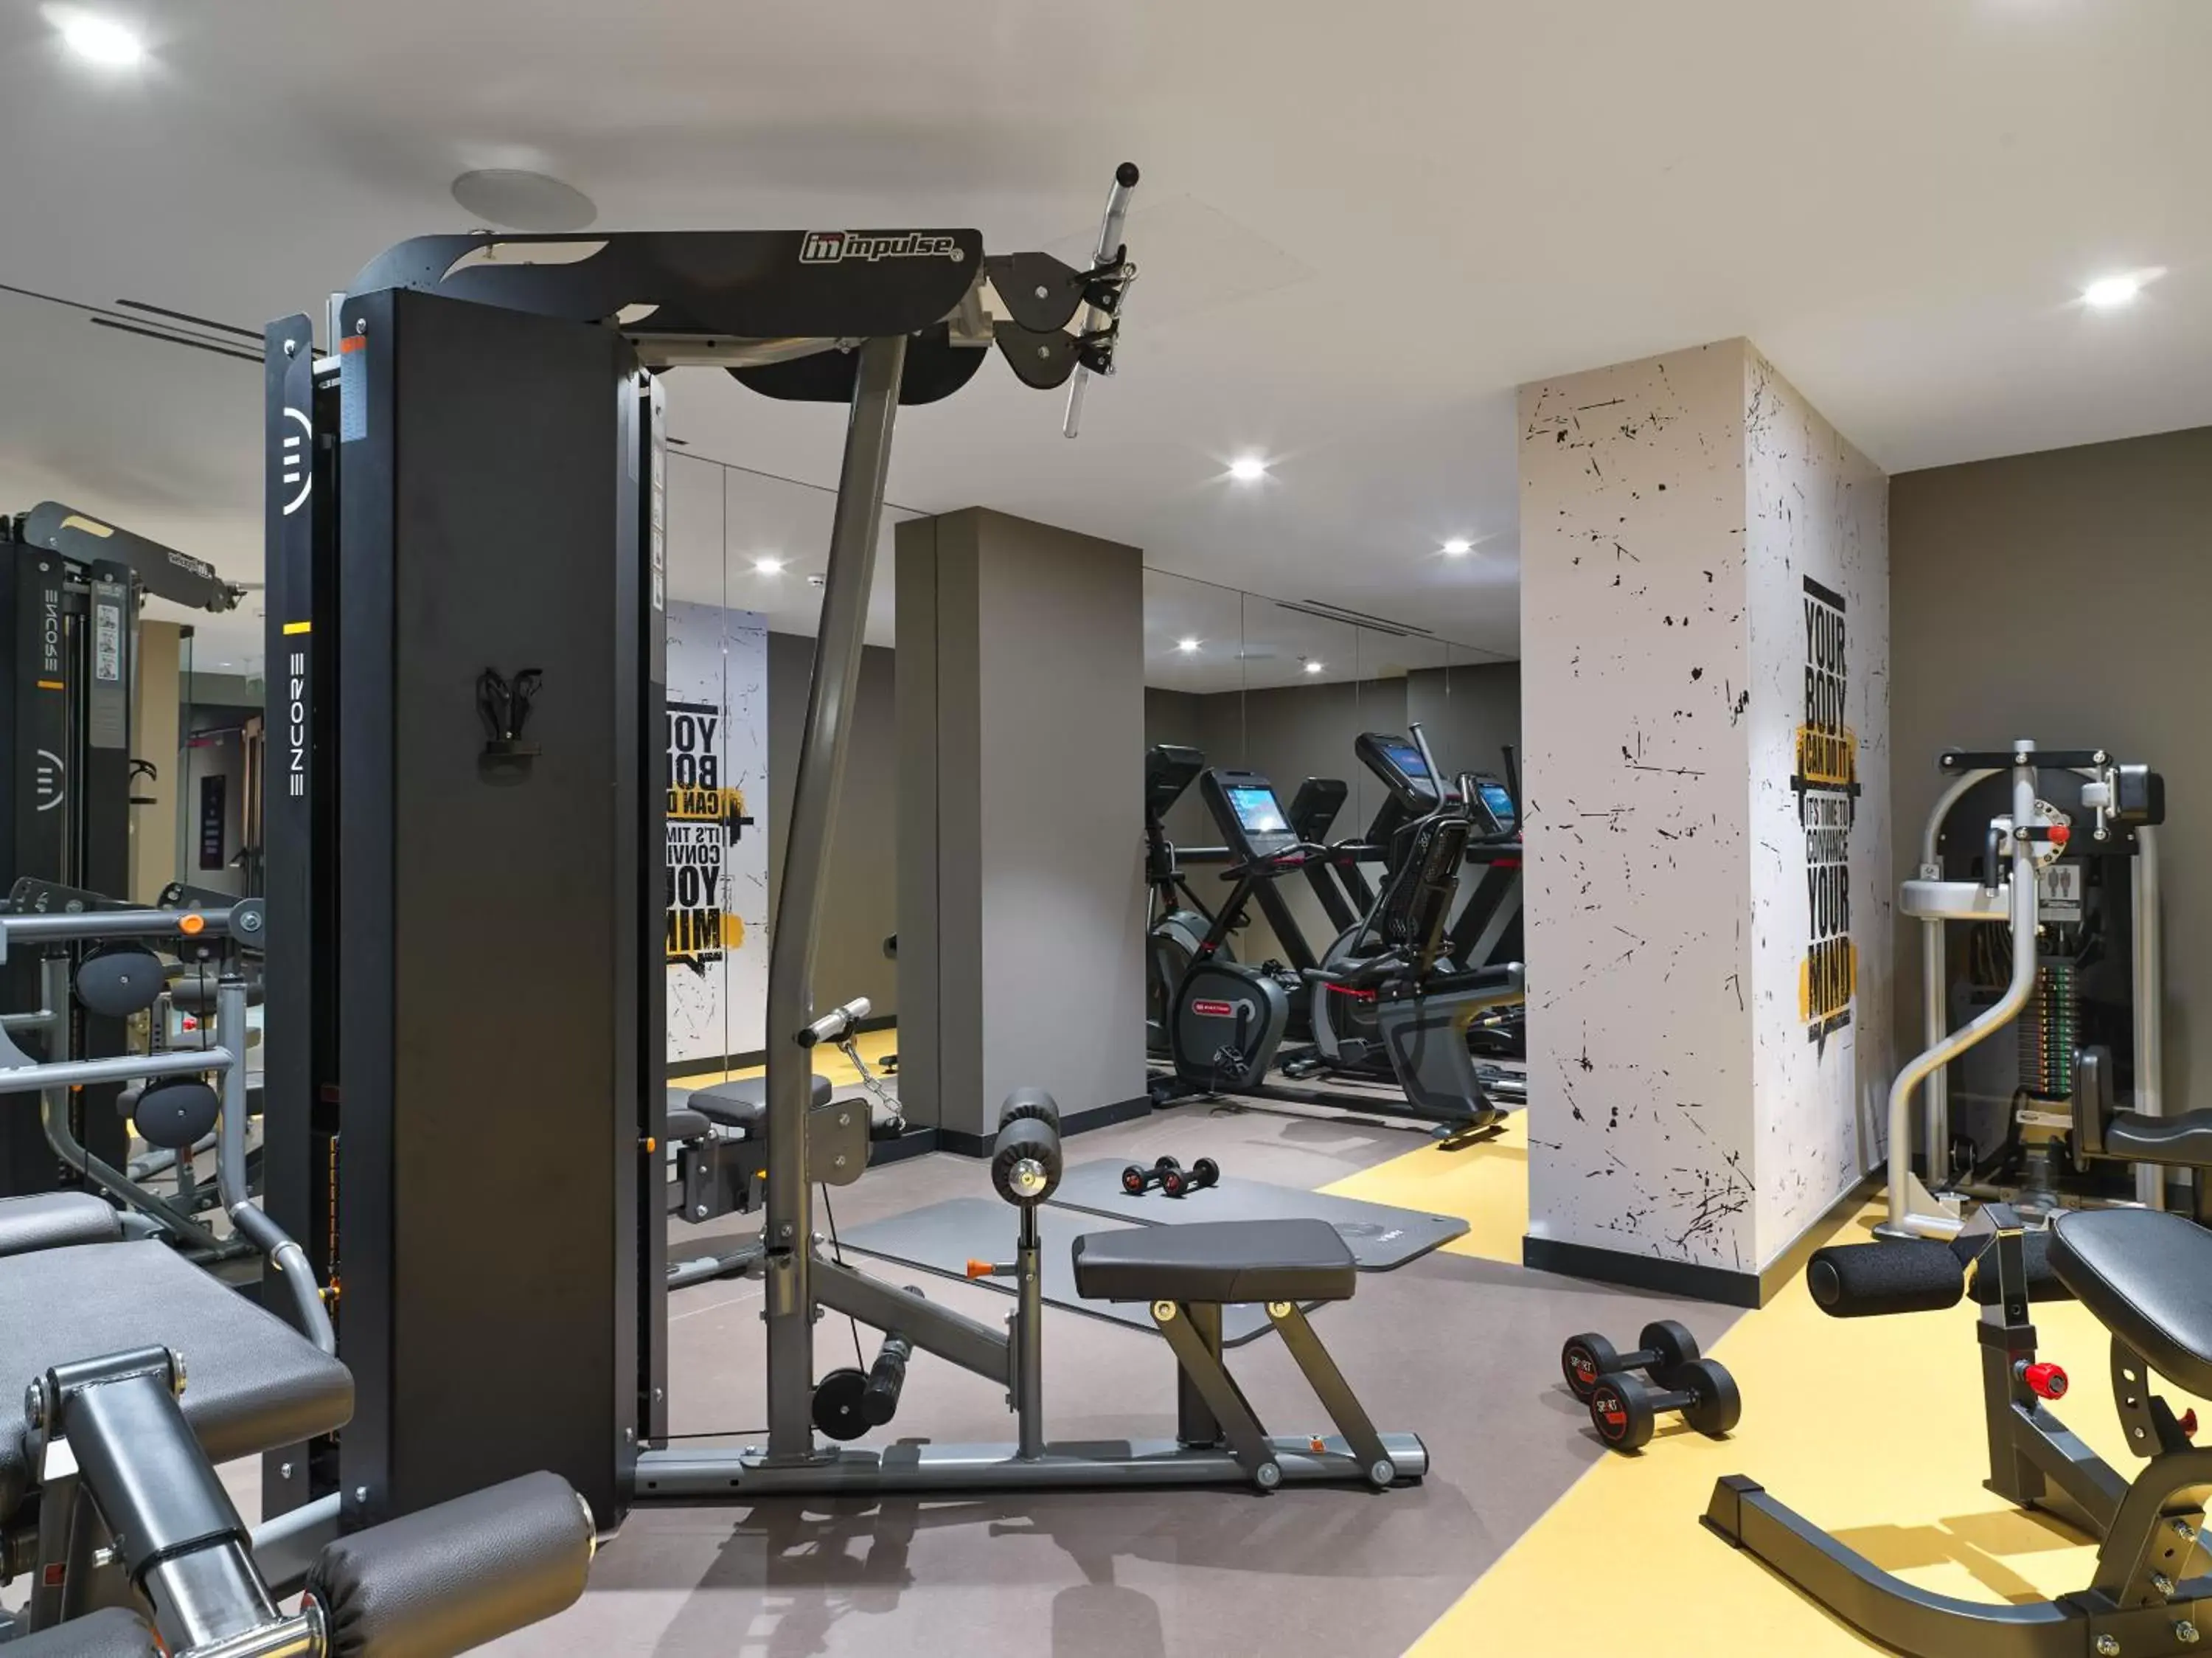 Fitness centre/facilities, Fitness Center/Facilities in NYX Esperia Palace Hotel Athens by Leonardo Hotels